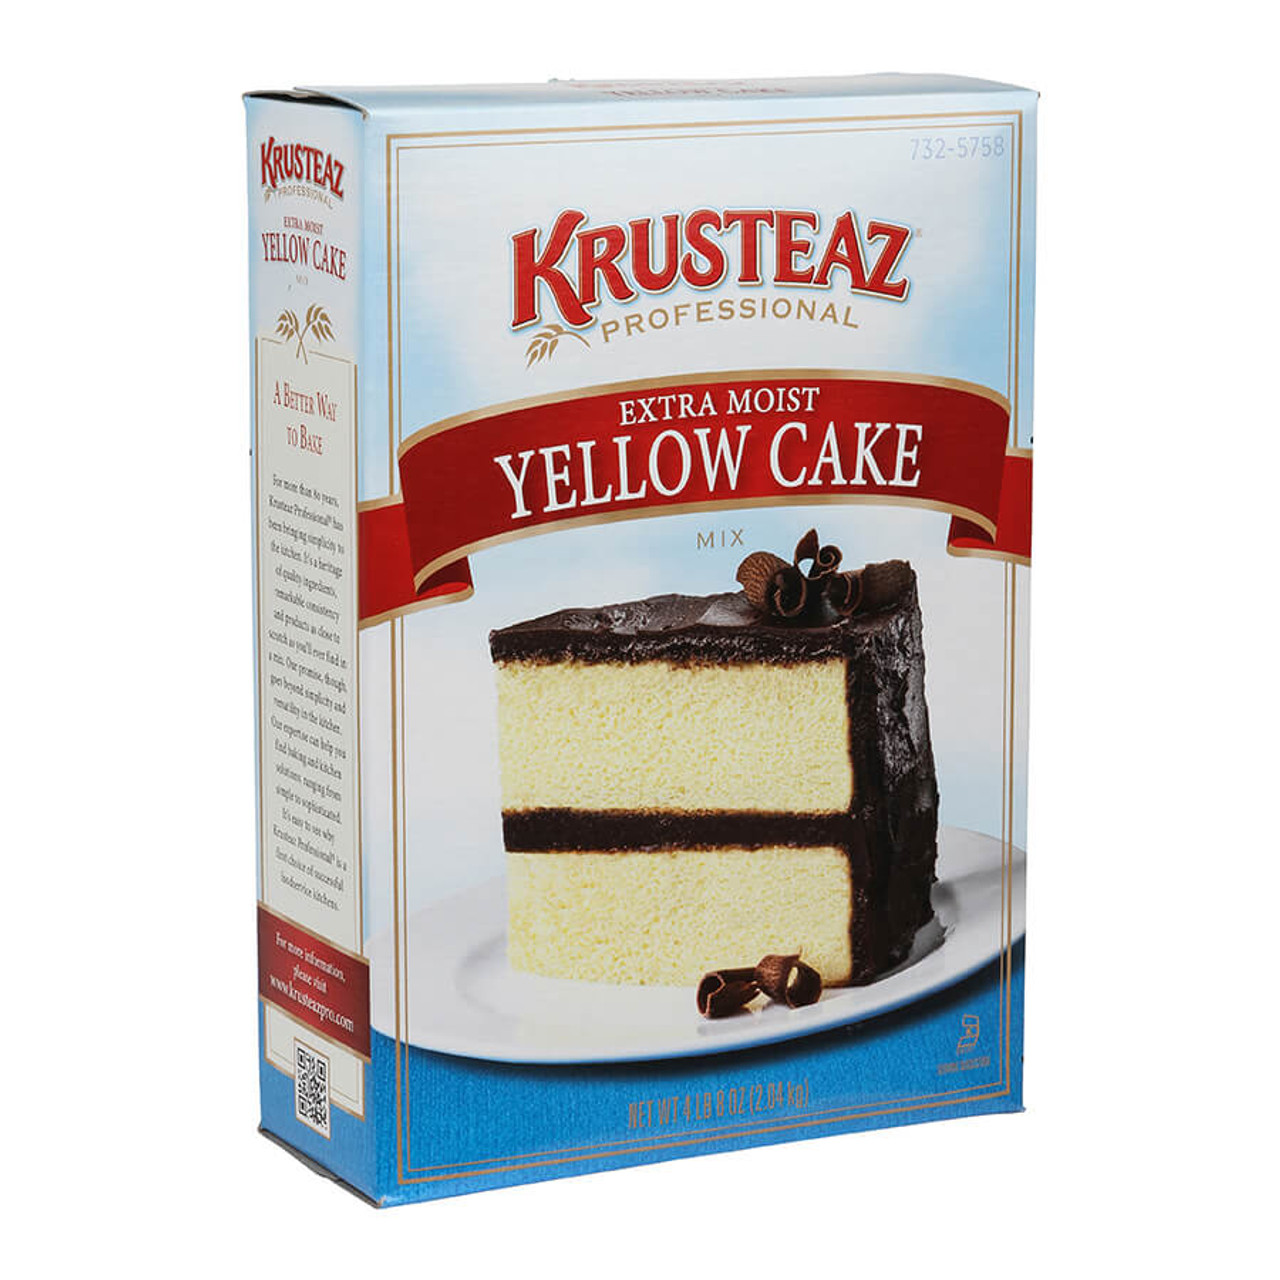 krusteaz Krusteaz Professional 4.5 Lbs/2.04 Kgs Extra Moist Yellow Cake Mix - 6/Case